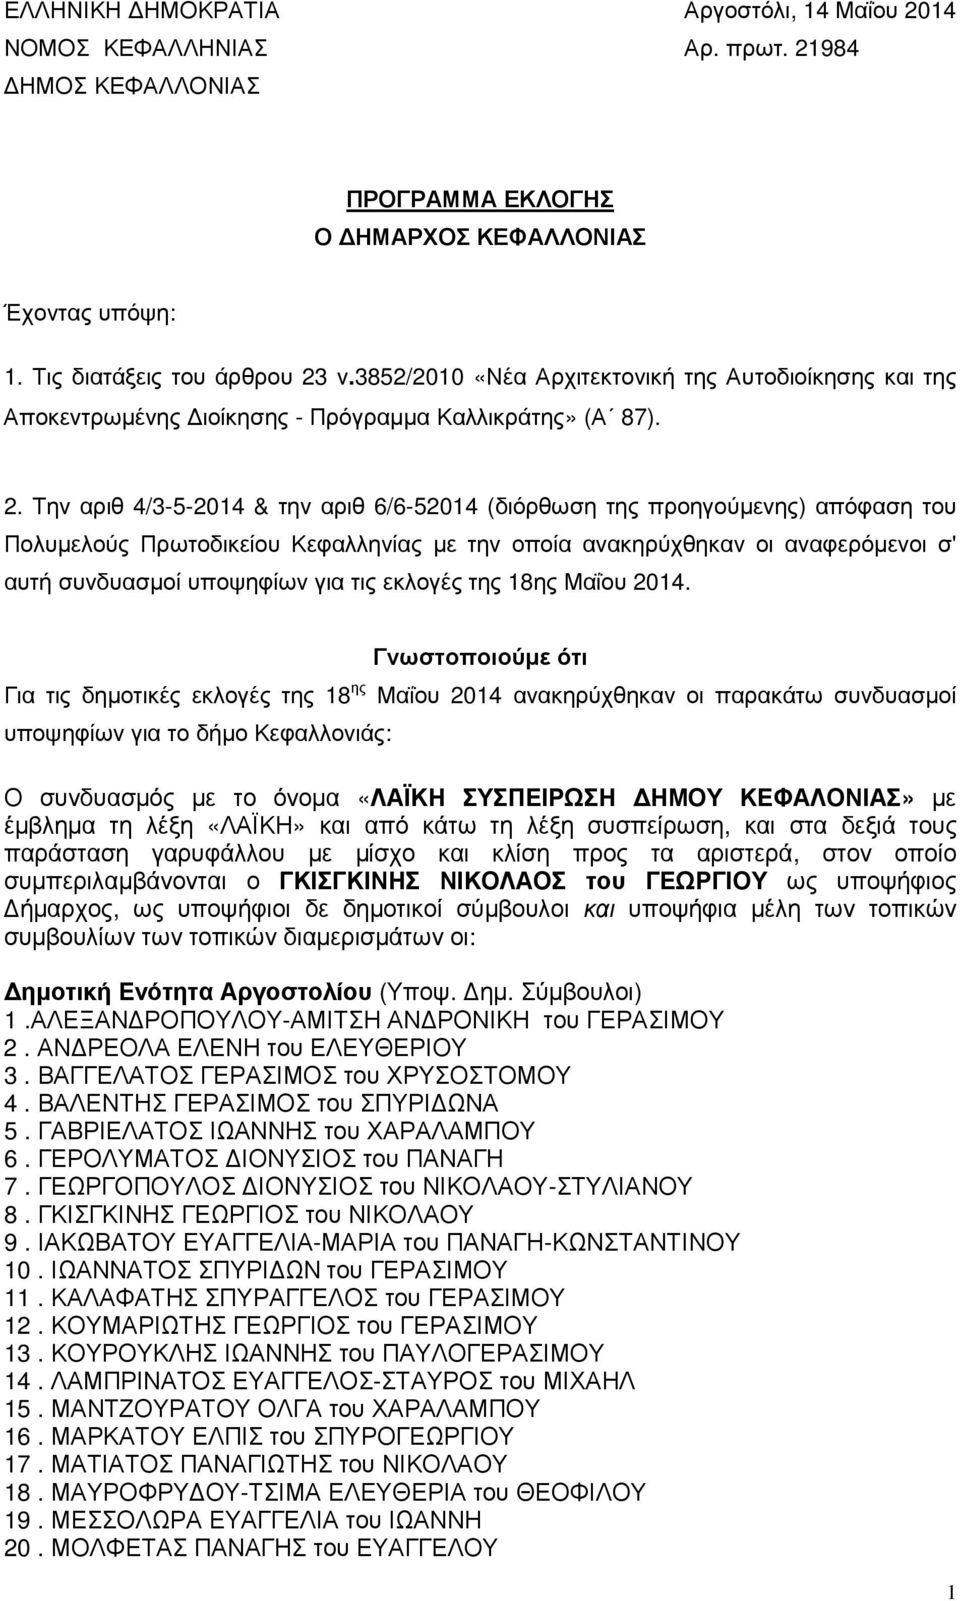 Την αριθ 4/3-5-2014 & την αριθ 6/6-52014 (διόρθωση της προηγούµενης) απόφαση του Πολυµελούς Πρωτοδικείου Κεφαλληνίας µε την οποία ανακηρύχθηκαν οι αναφερόµενοι σ' αυτή συνδυασµοί υποψηφίων για τις